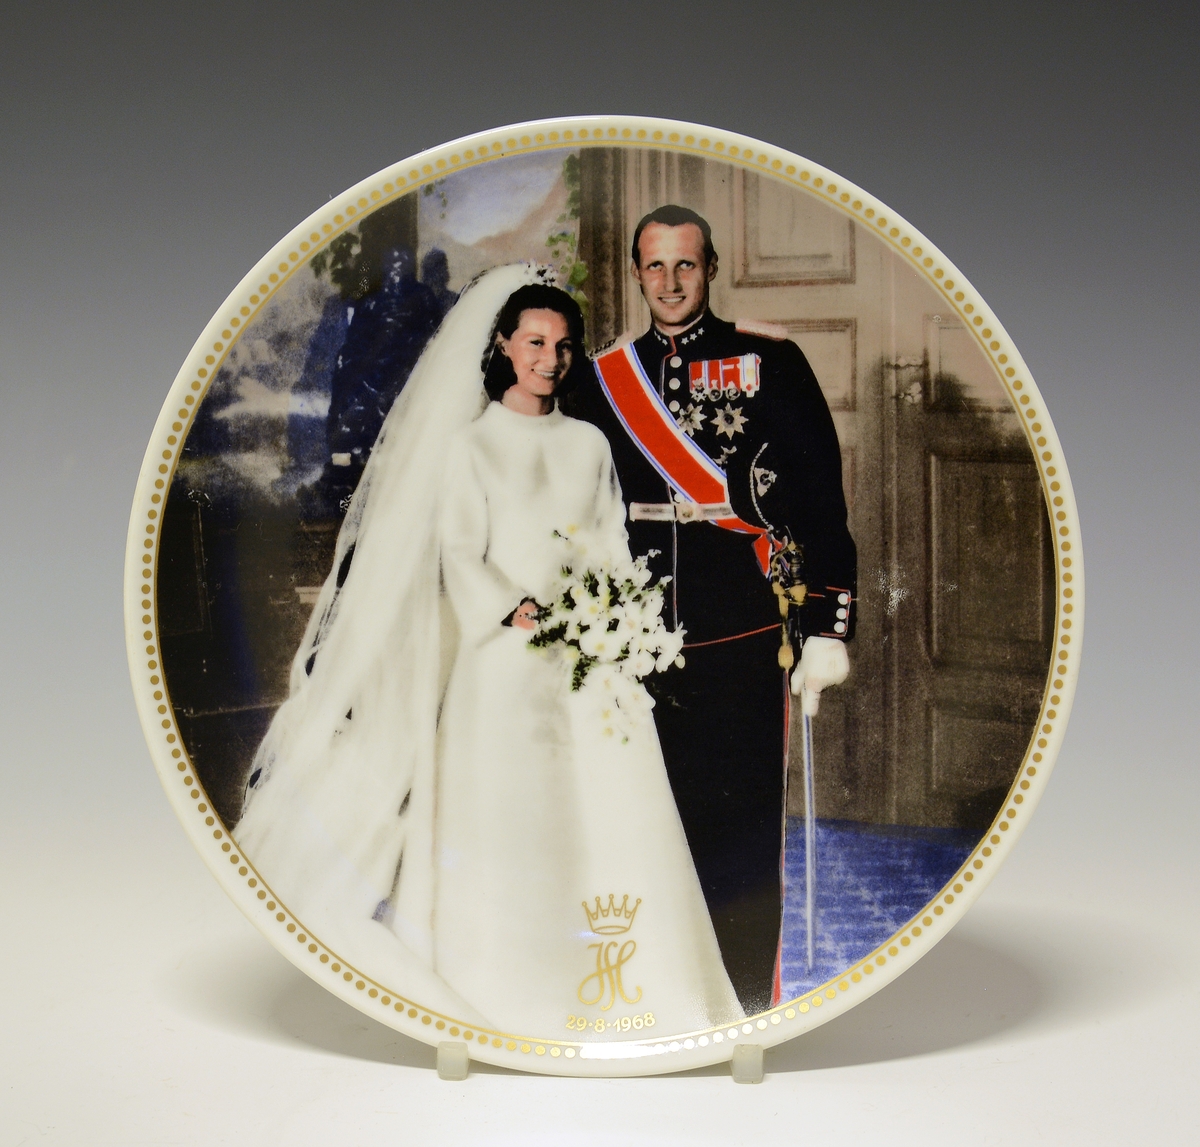 Platte med bryllupsbilde av Kronprins Harald og Kronprinsesse Sonja med monogram og bryllupsdato 29.08.1968. Gullstrek med prikket bord ytterst på fanen.